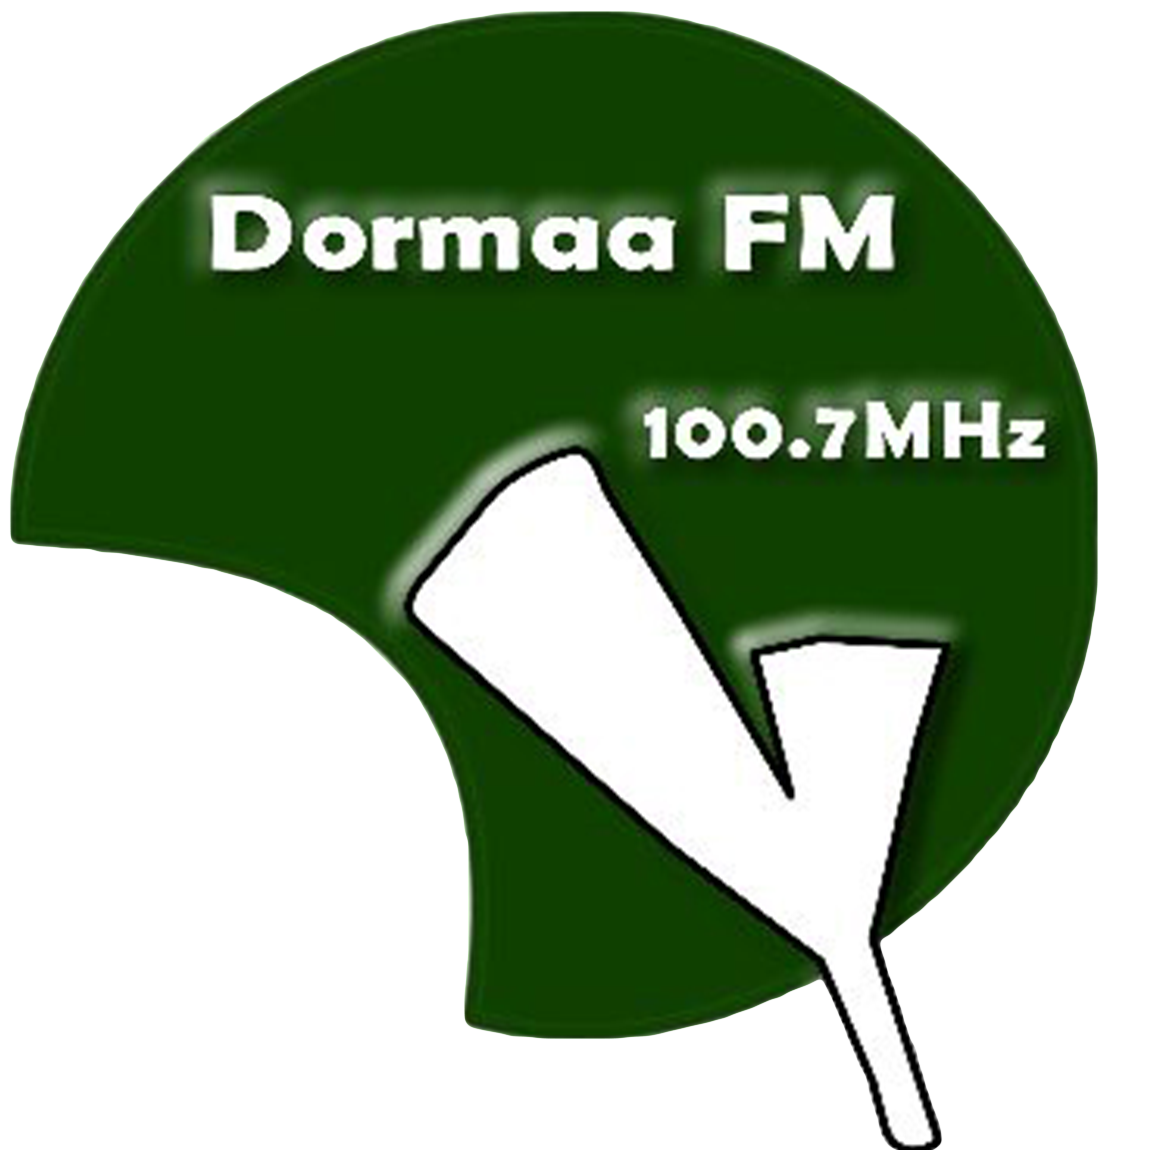 Dormaa FM 100.7